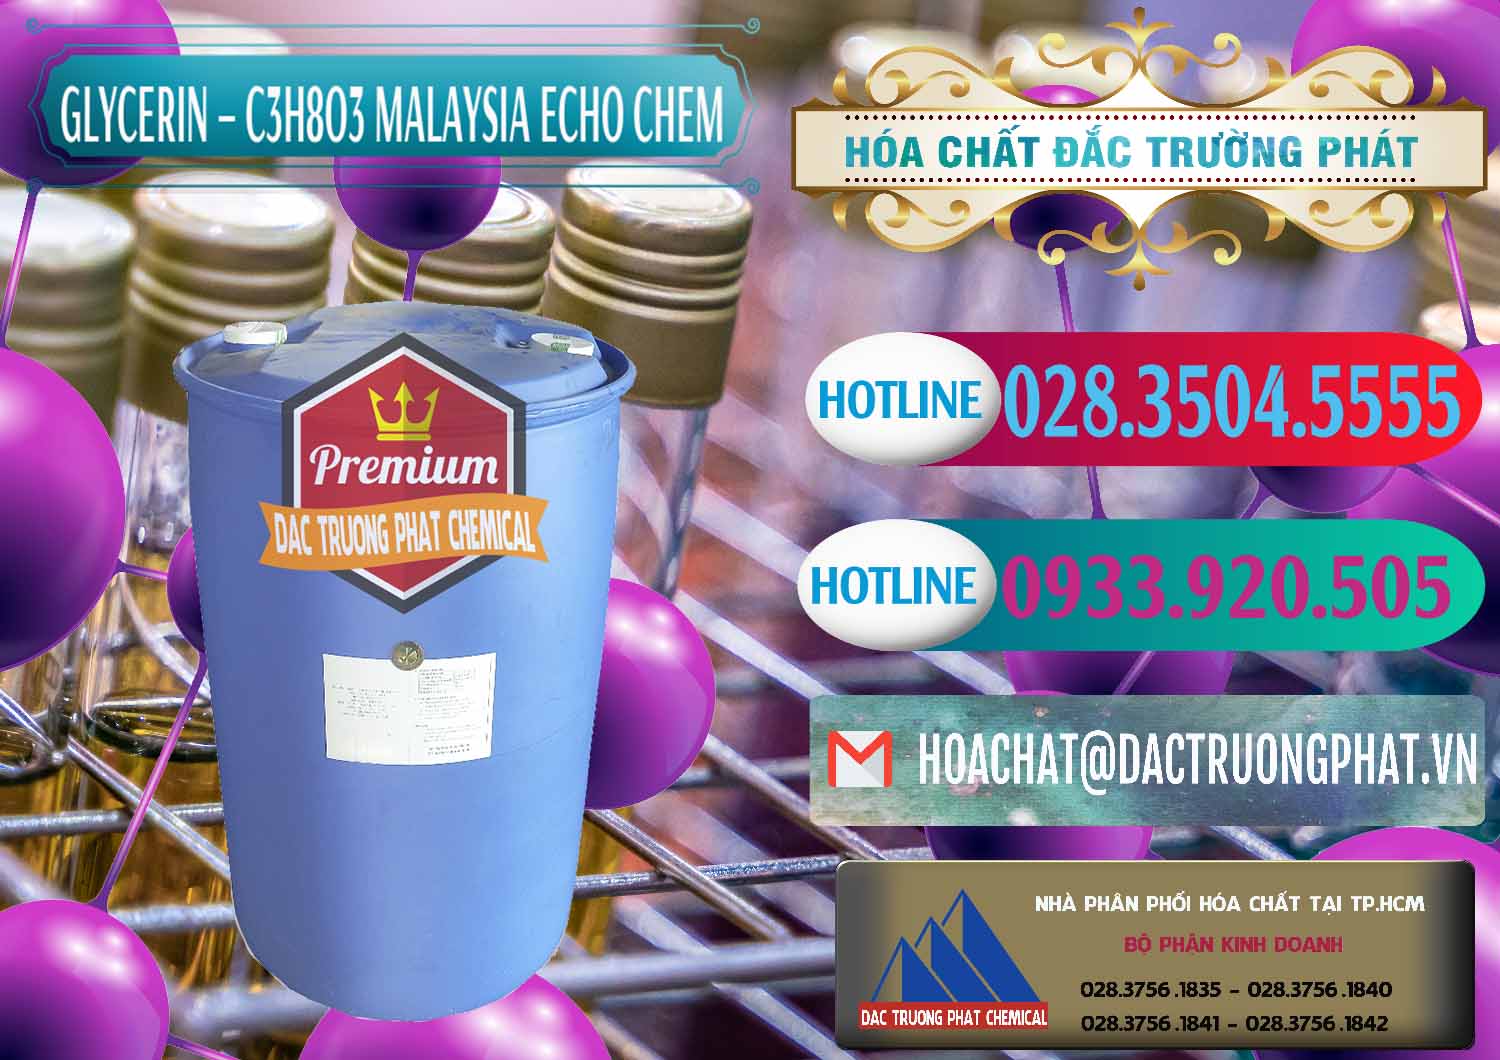 Nơi bán ( cung ứng ) C3H8O3 - Glycerin 99.7% Echo Chem Malaysia - 0273 - Công ty cung cấp - kinh doanh hóa chất tại TP.HCM - truongphat.vn